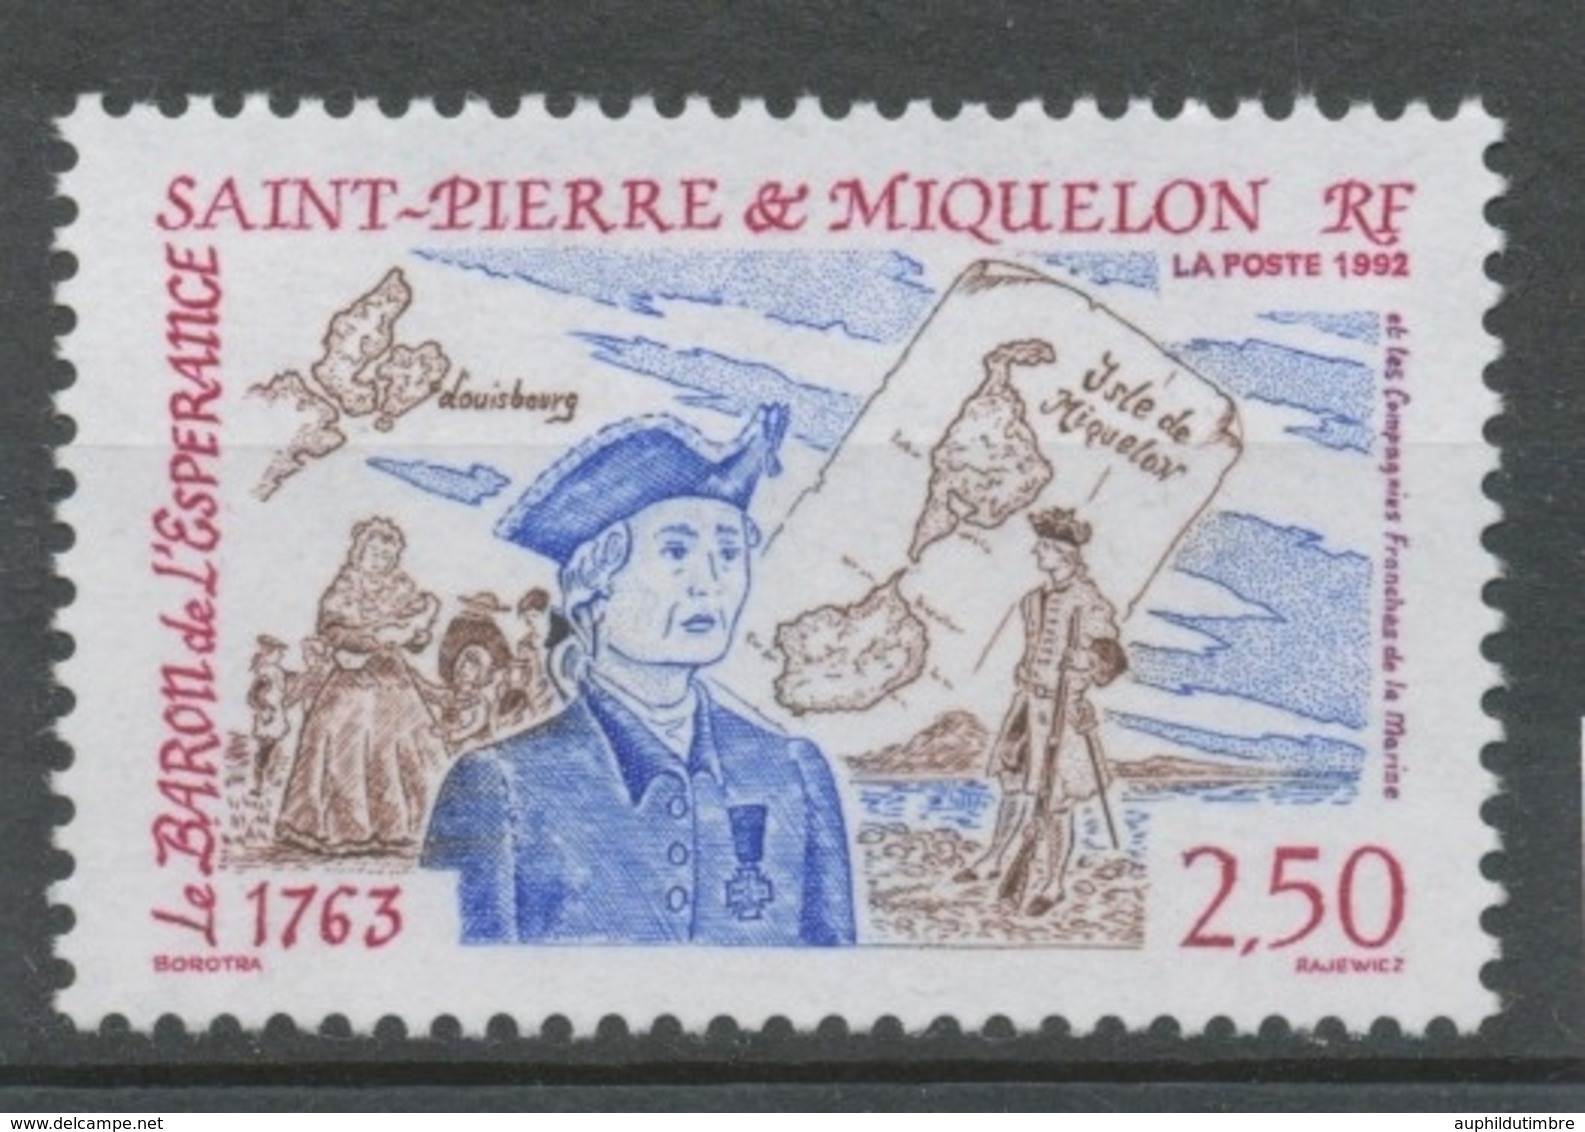 SPM  N°570 Le Baron De L' Espérance, Les Compagnies Franches De La Marine Cartes, Personnages De 1763 2f50 ZC570 - Unused Stamps